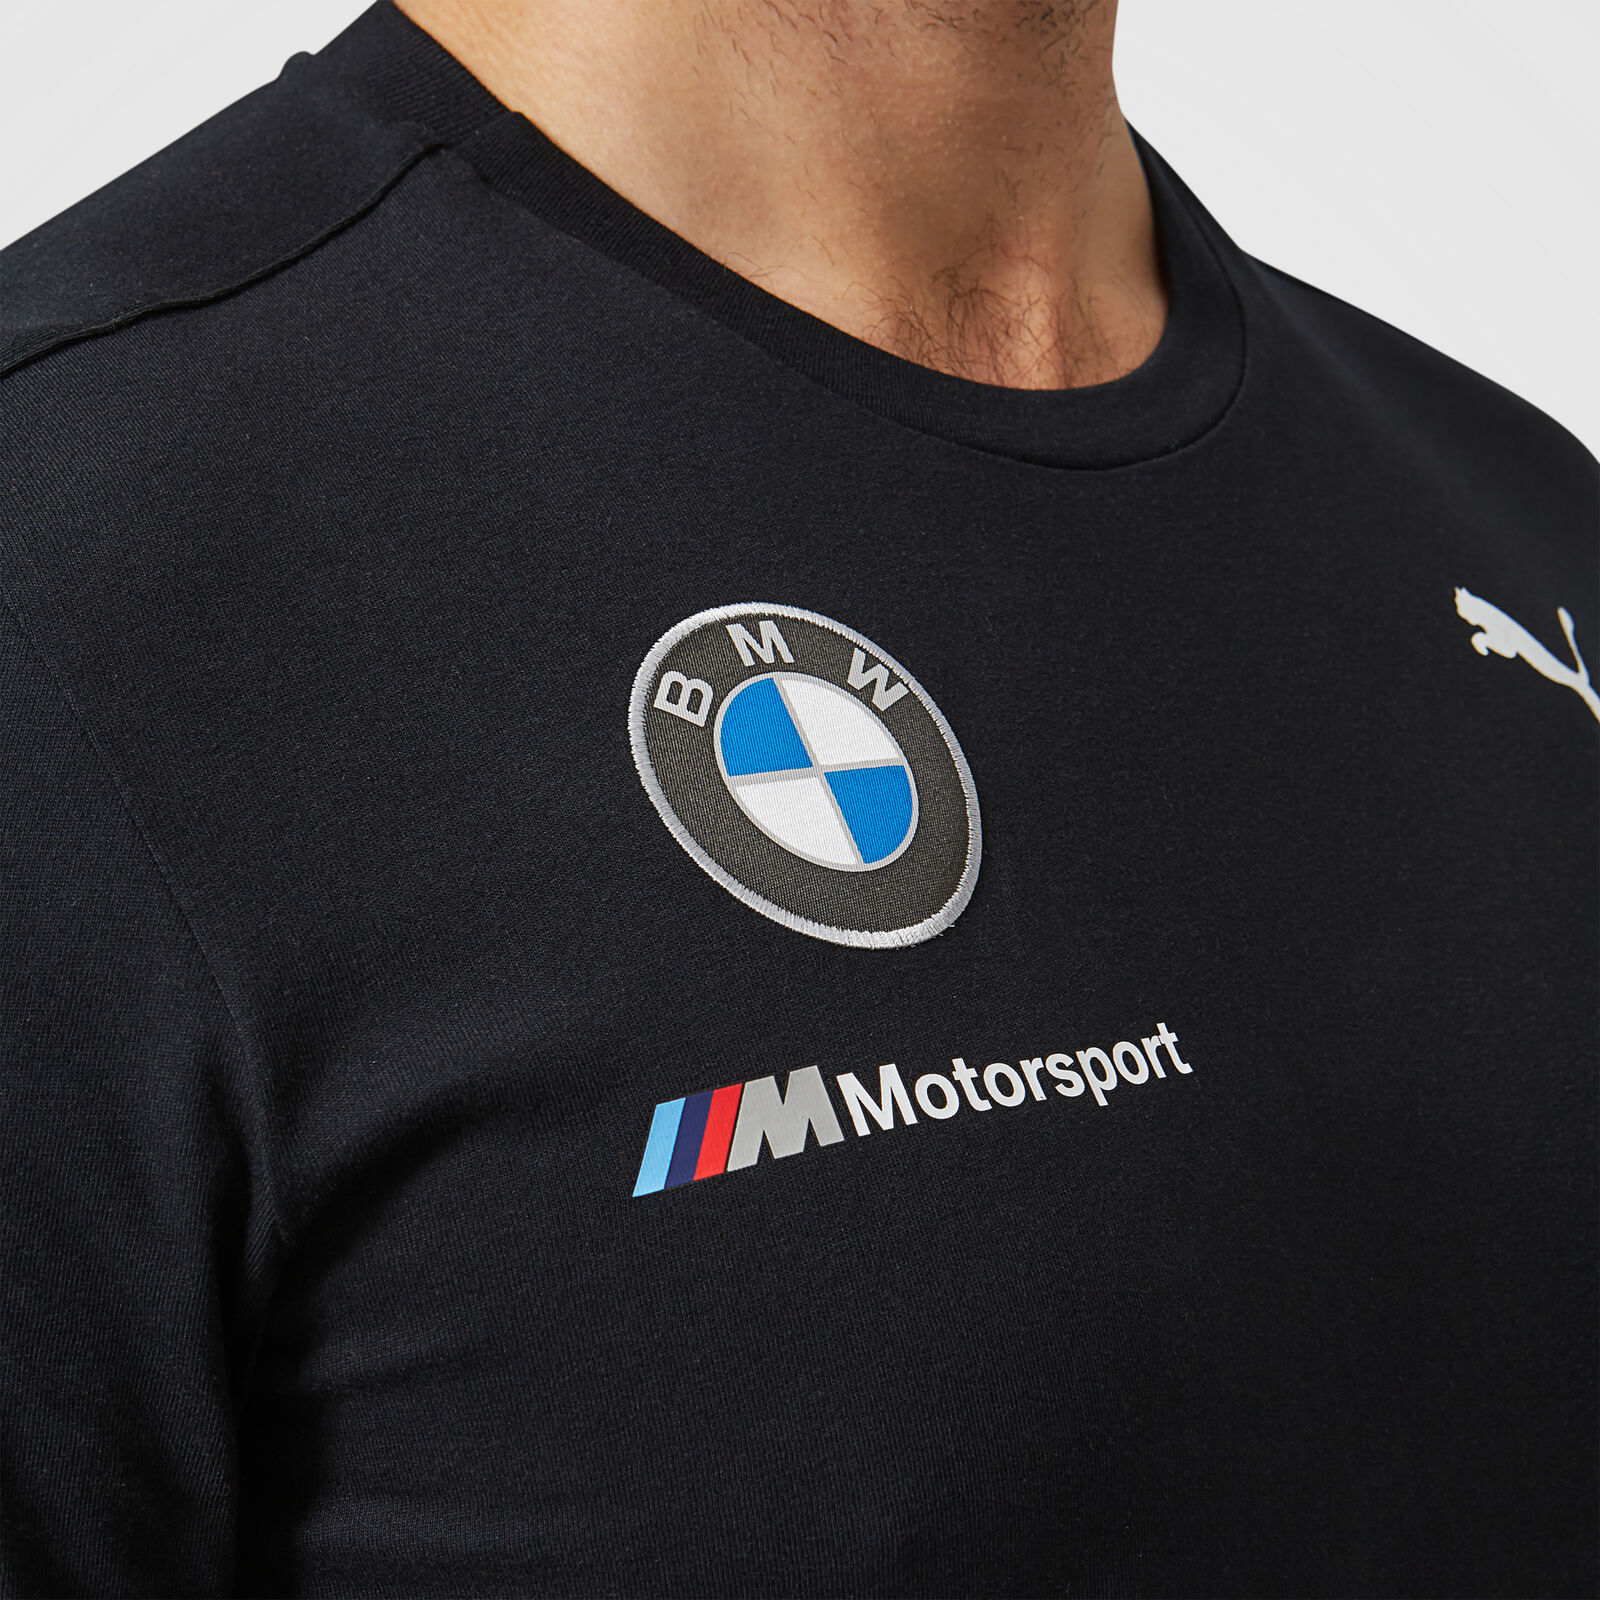 Tshirt Homme BMW Motorsport F1 Racing Team Officiel Formule 1